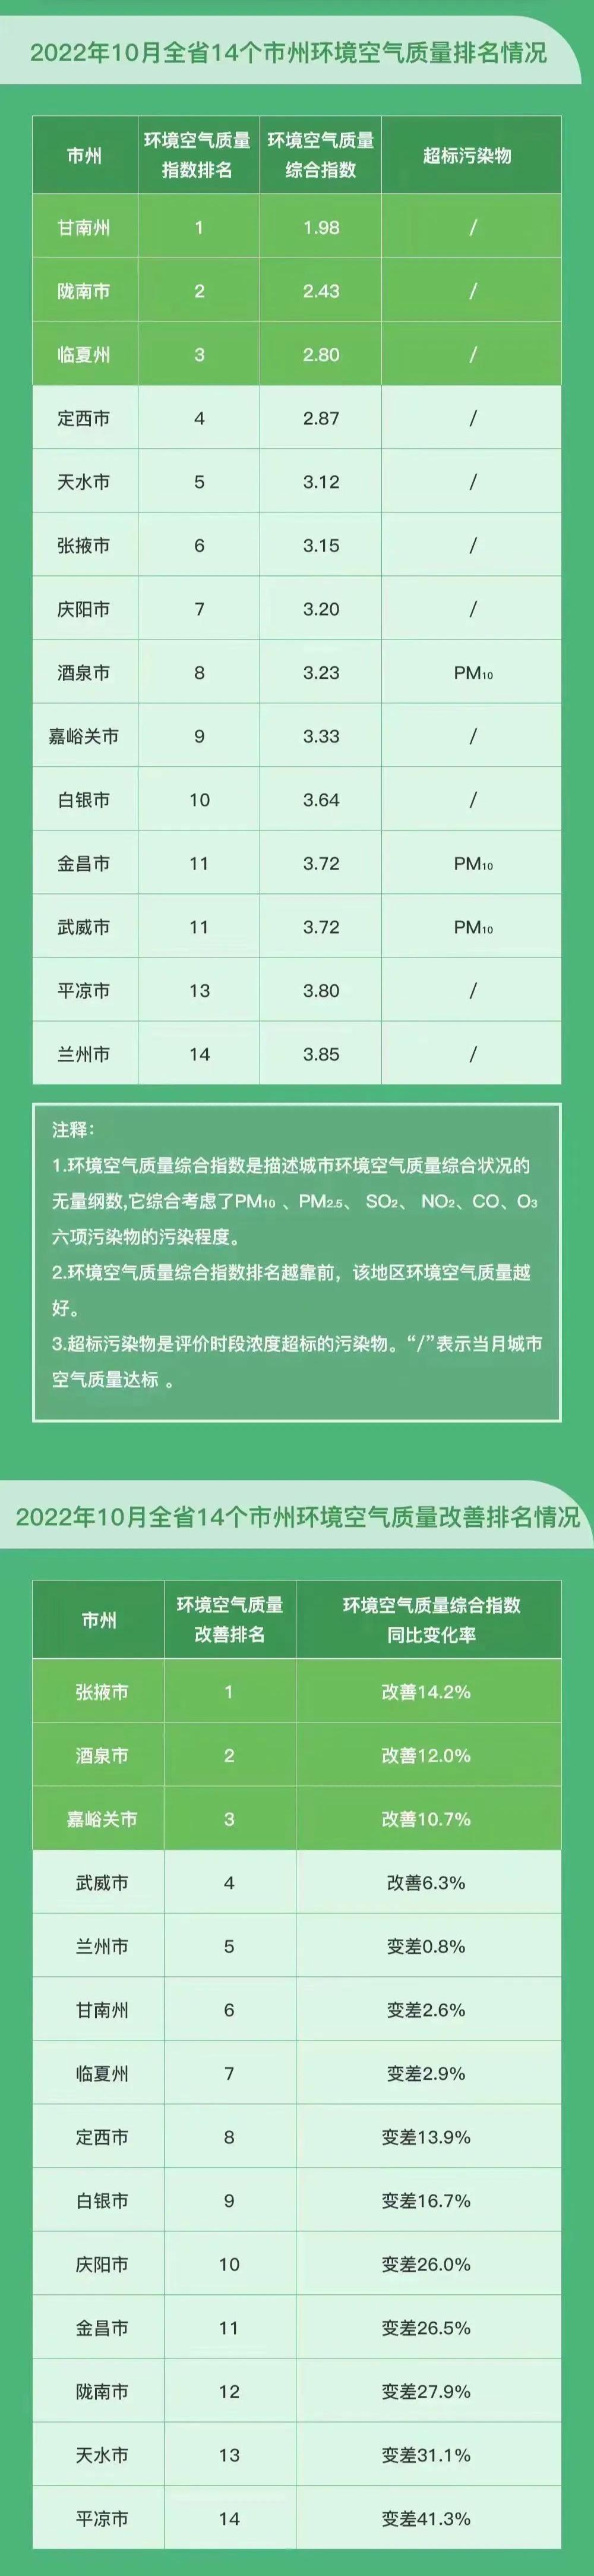 甘肃空气质量排名(17882627)-20221107183043.jpg